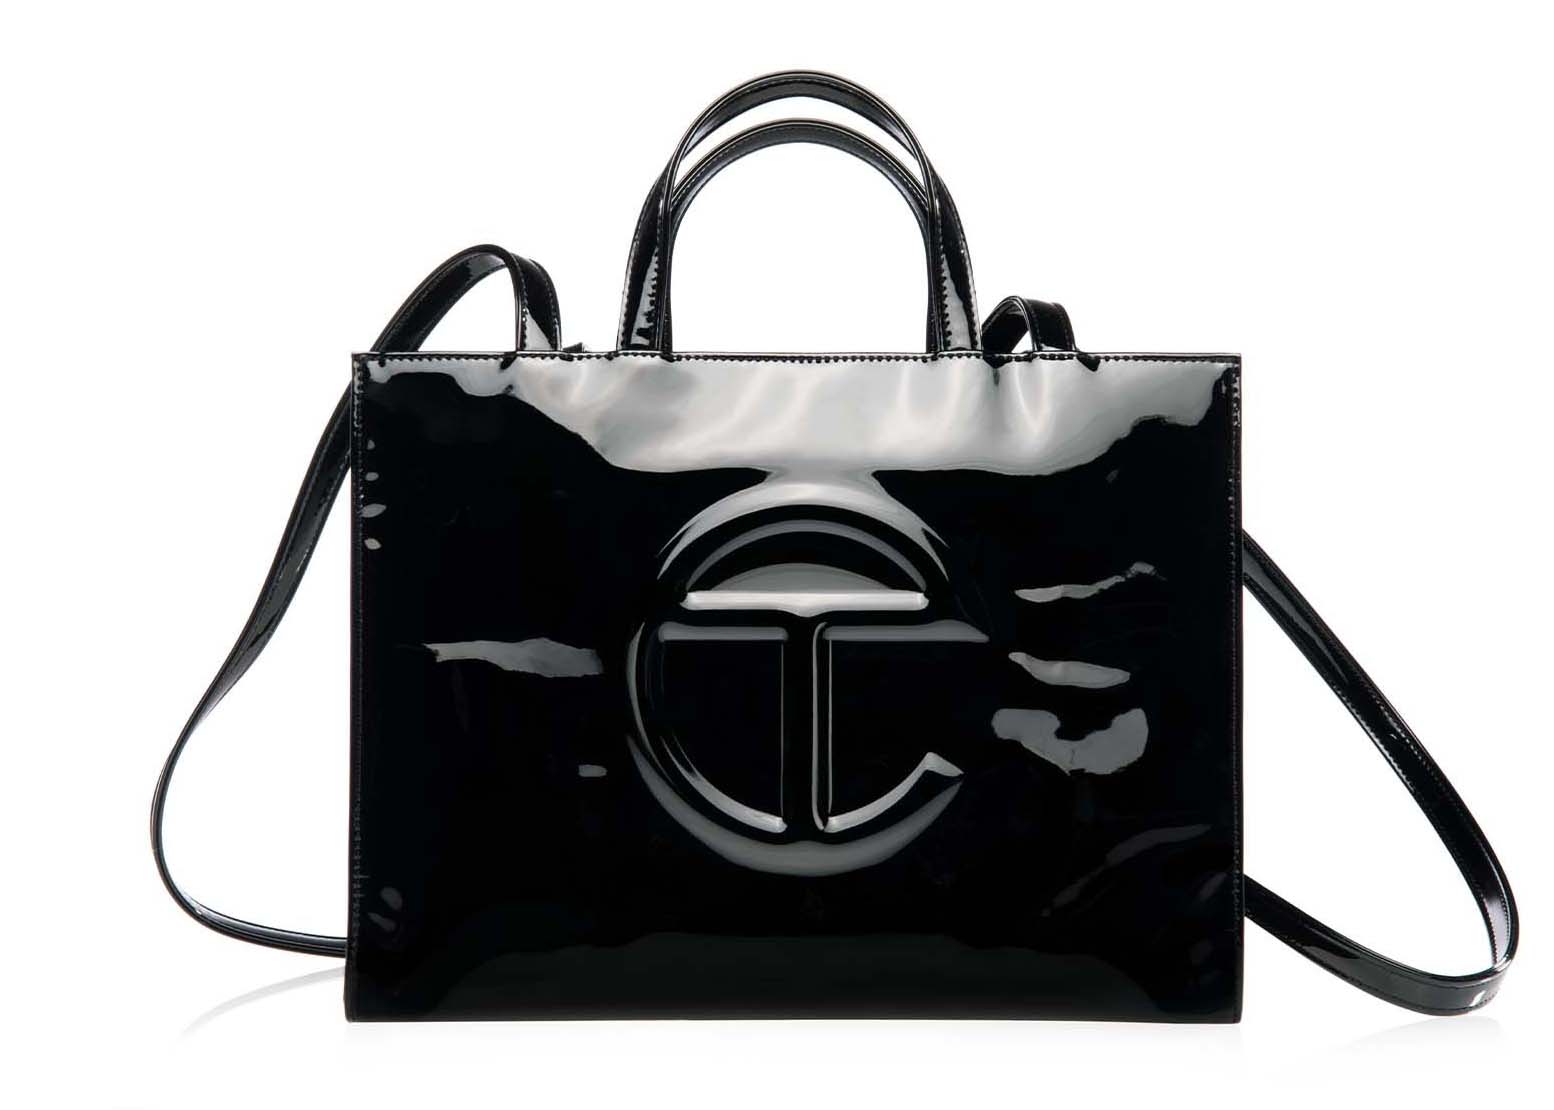 Telfar Shopping Bag Large Black